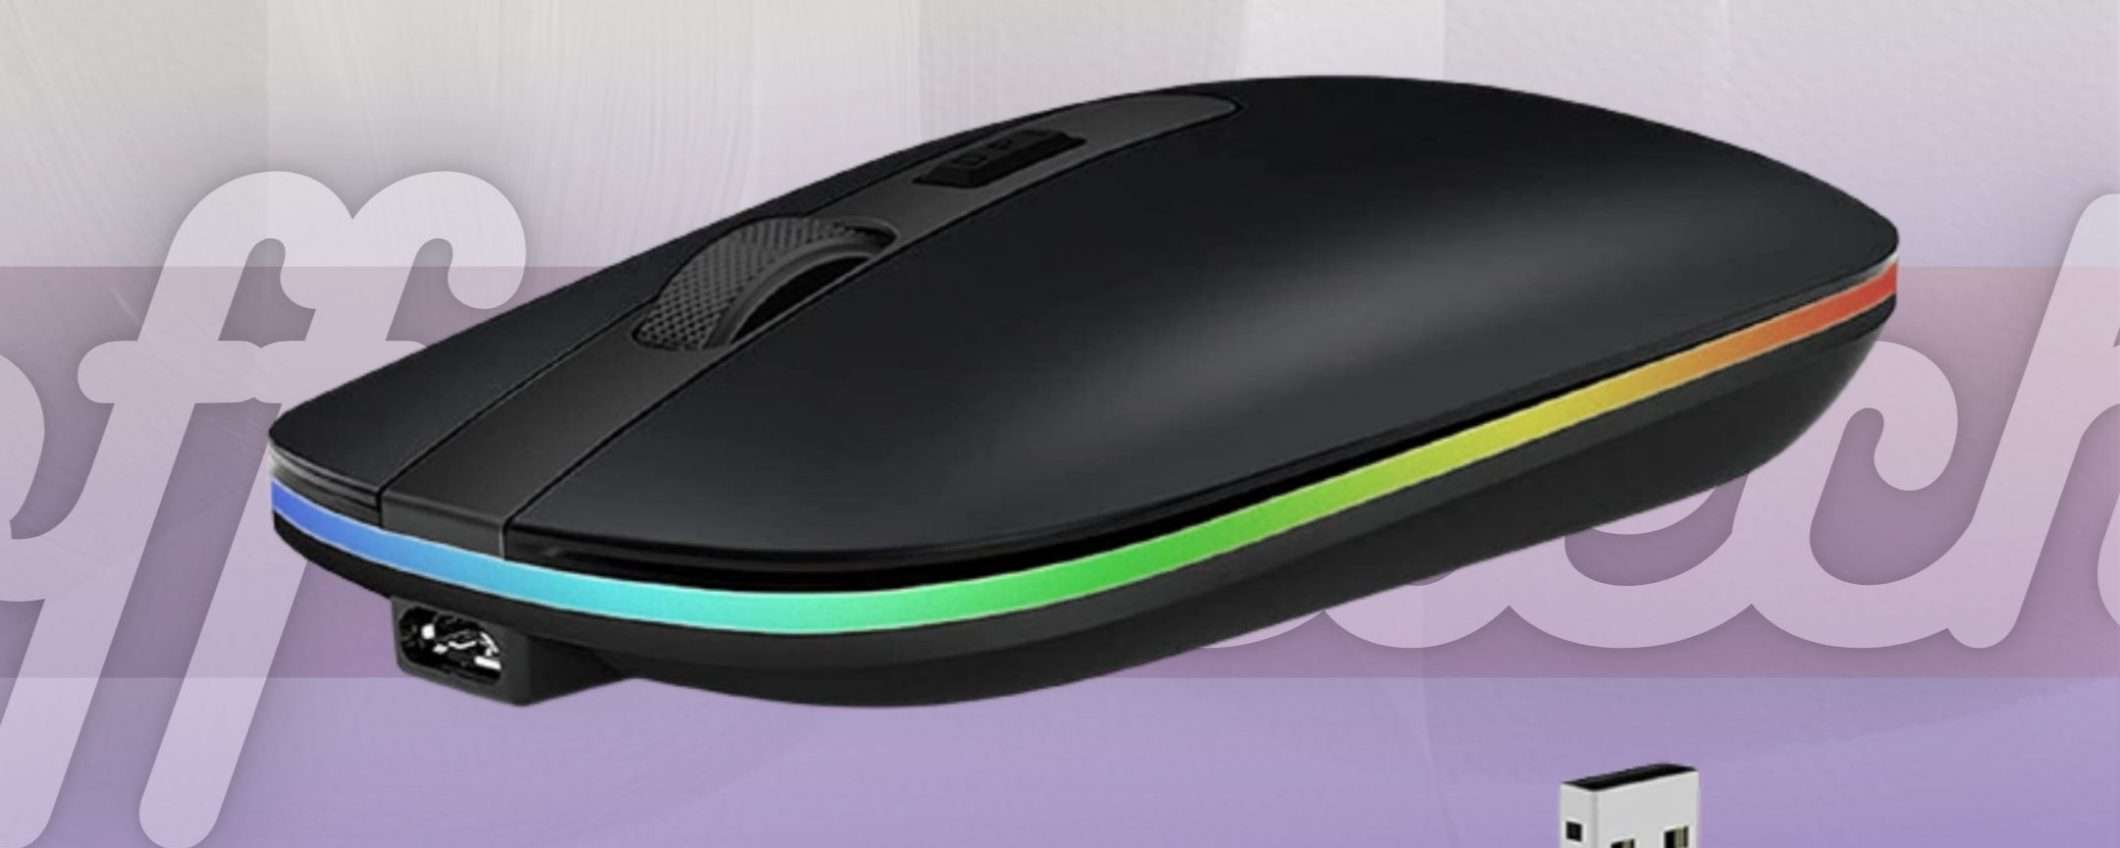 Mouse wireless BOMBA: è anche ricaricabile e costa 11€